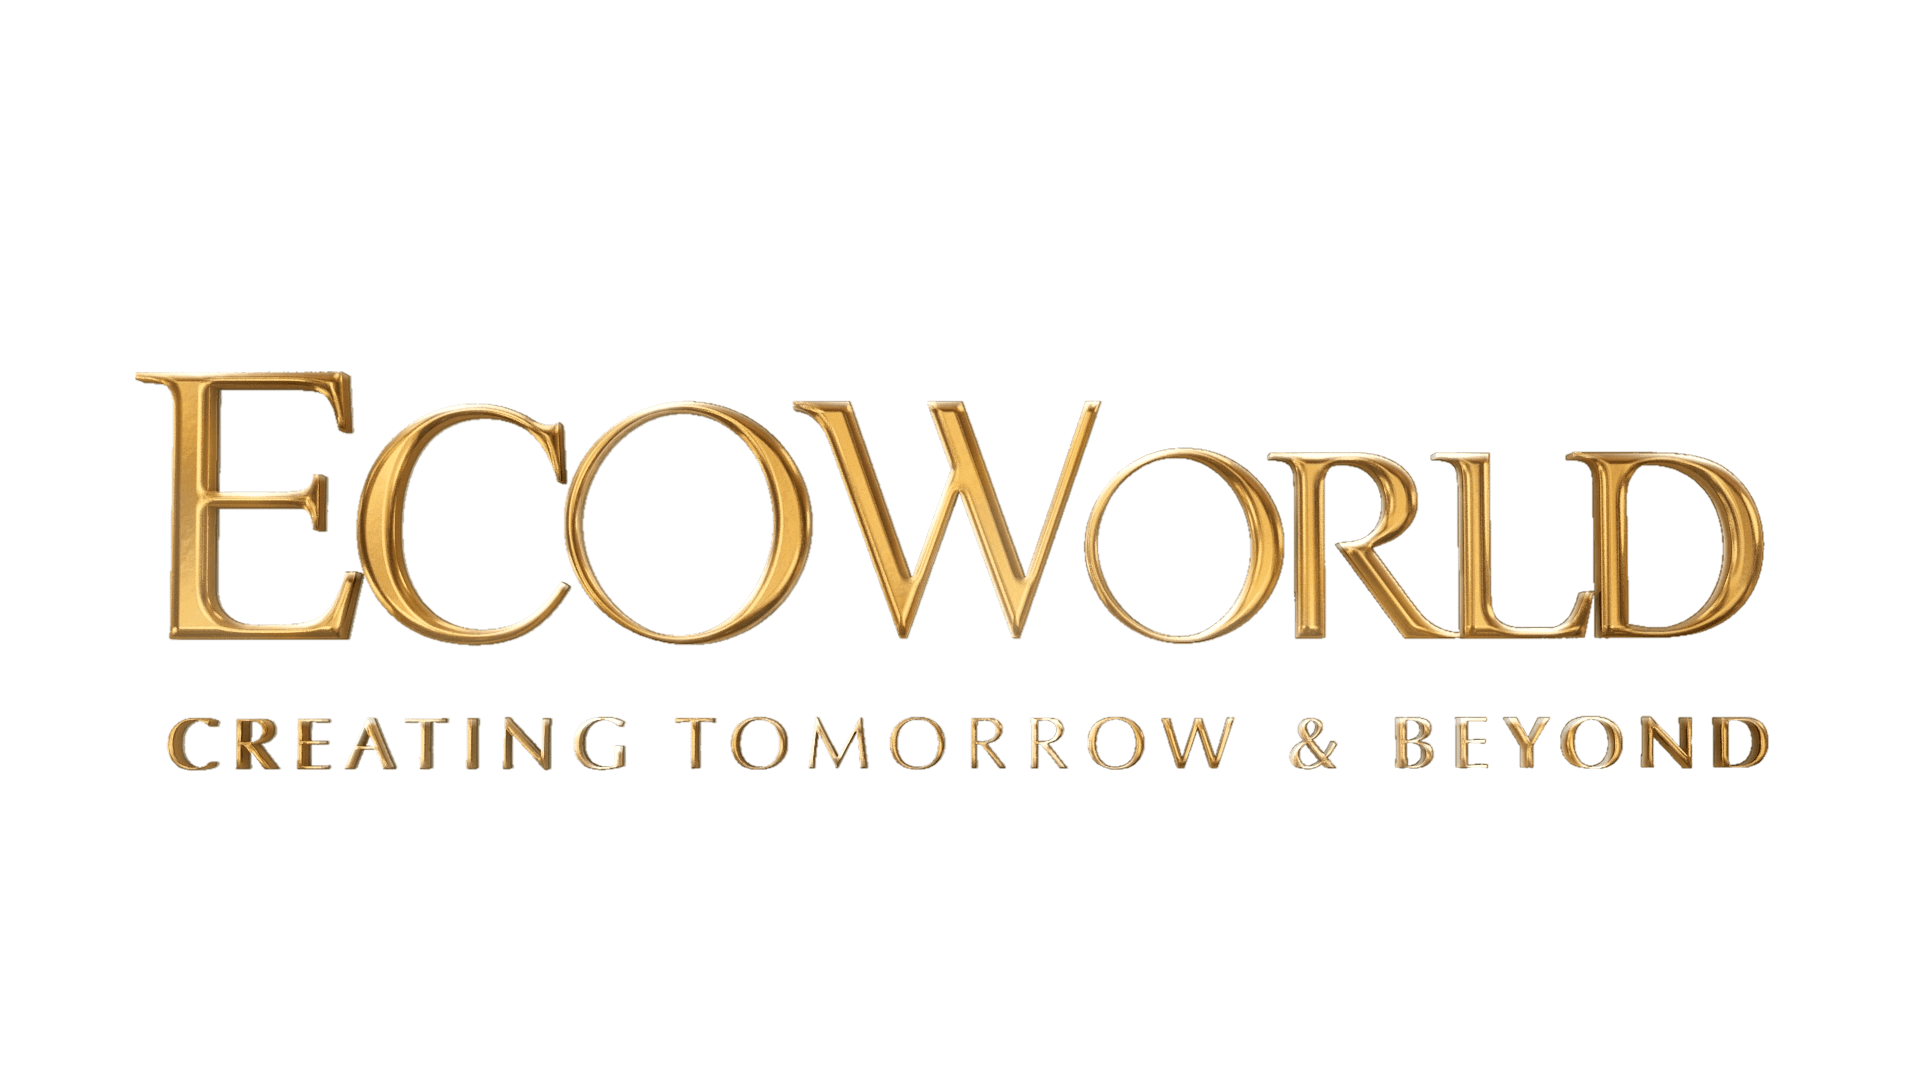 Tan World Logo - EcoWorld Tomorrow and Beyond